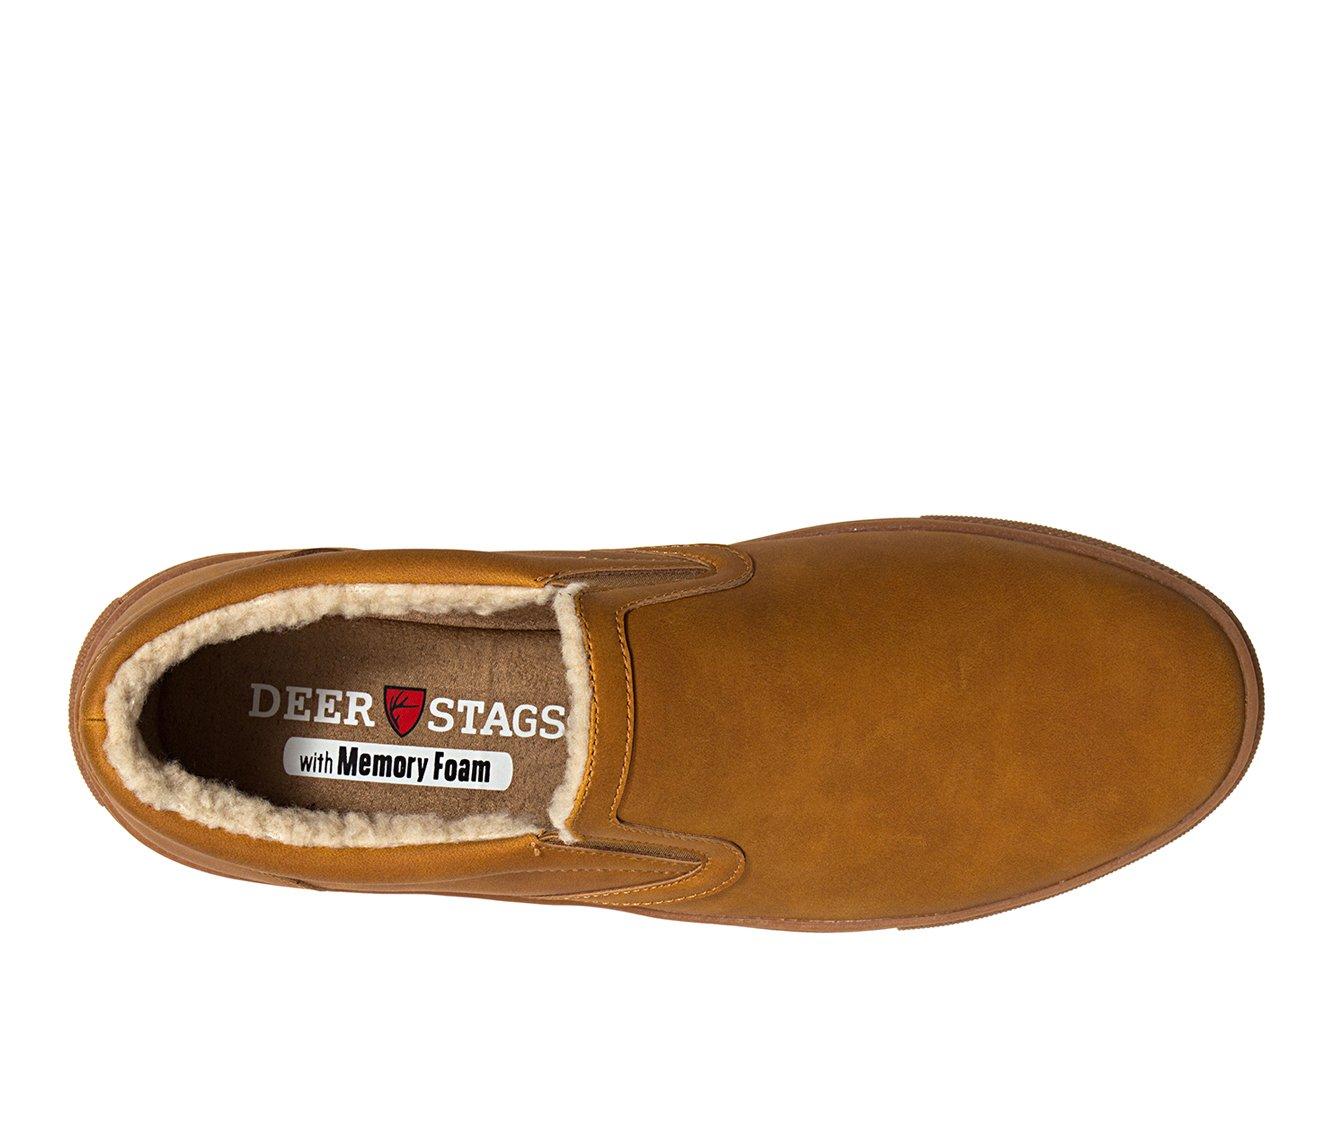 Men's Deer Stags Tillard Slip-On Sneakers